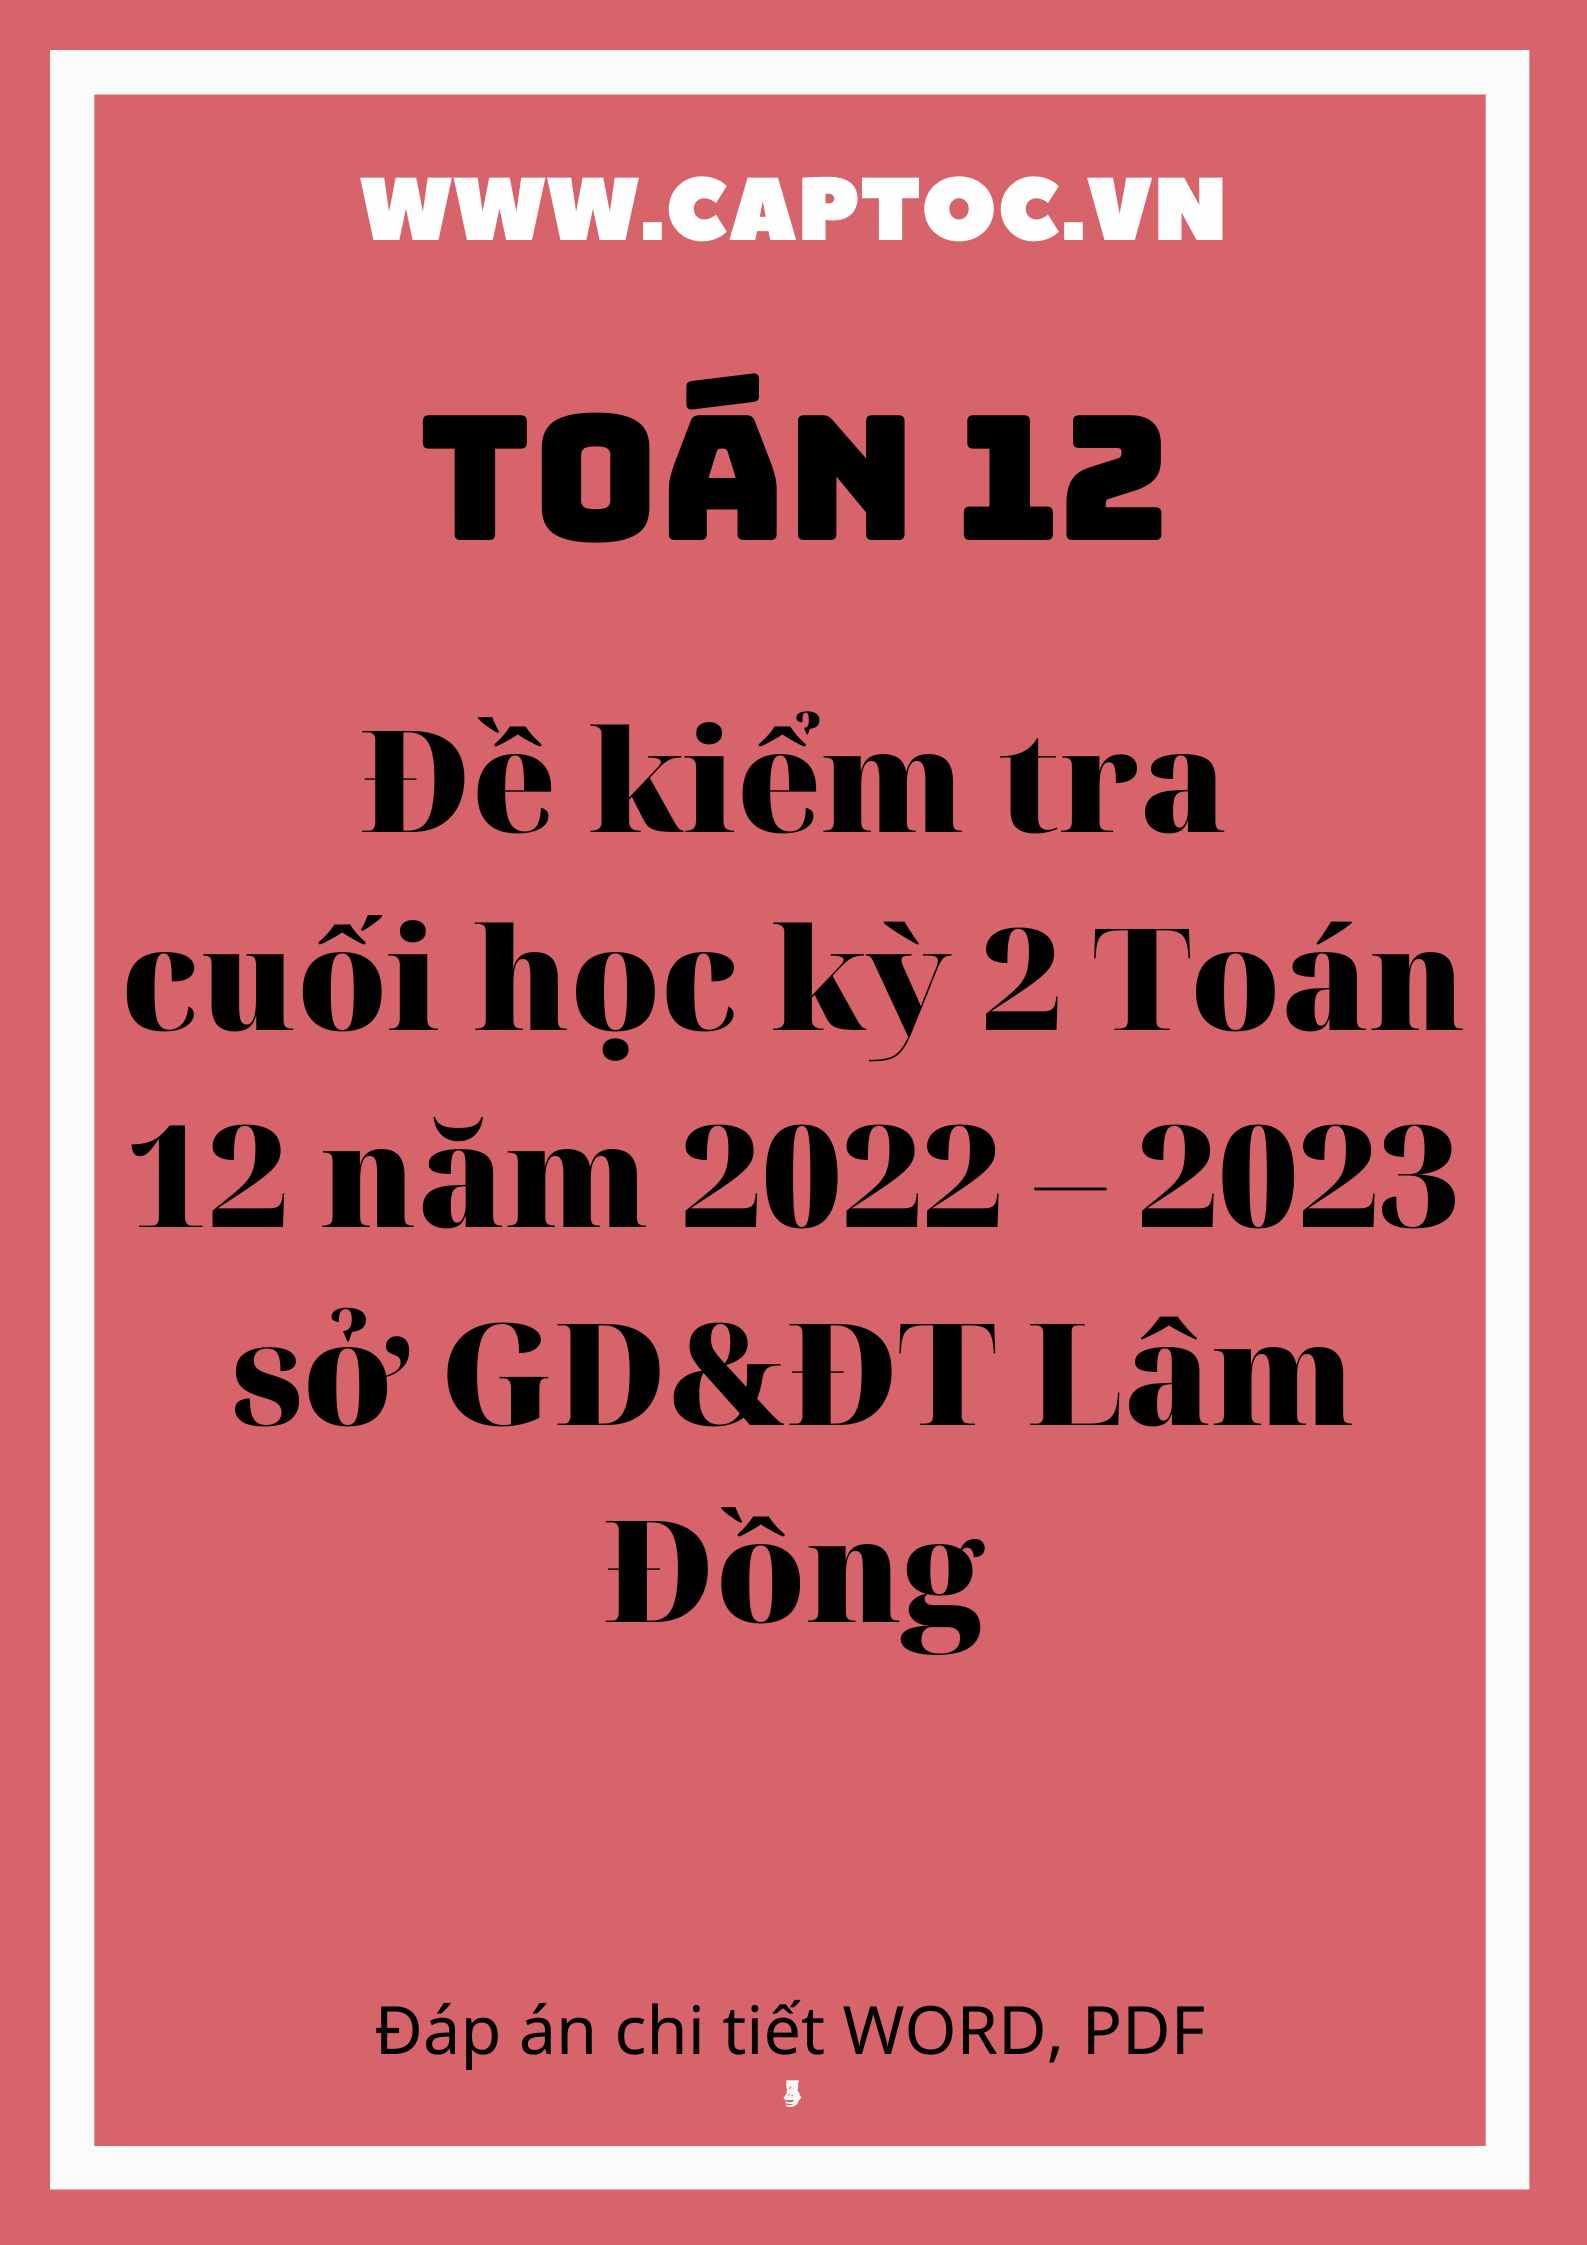 Đề kiểm tra cuối học kỳ 2 Toán 12 năm 2022 – 2023 sở GD&ĐT Lâm Đồng